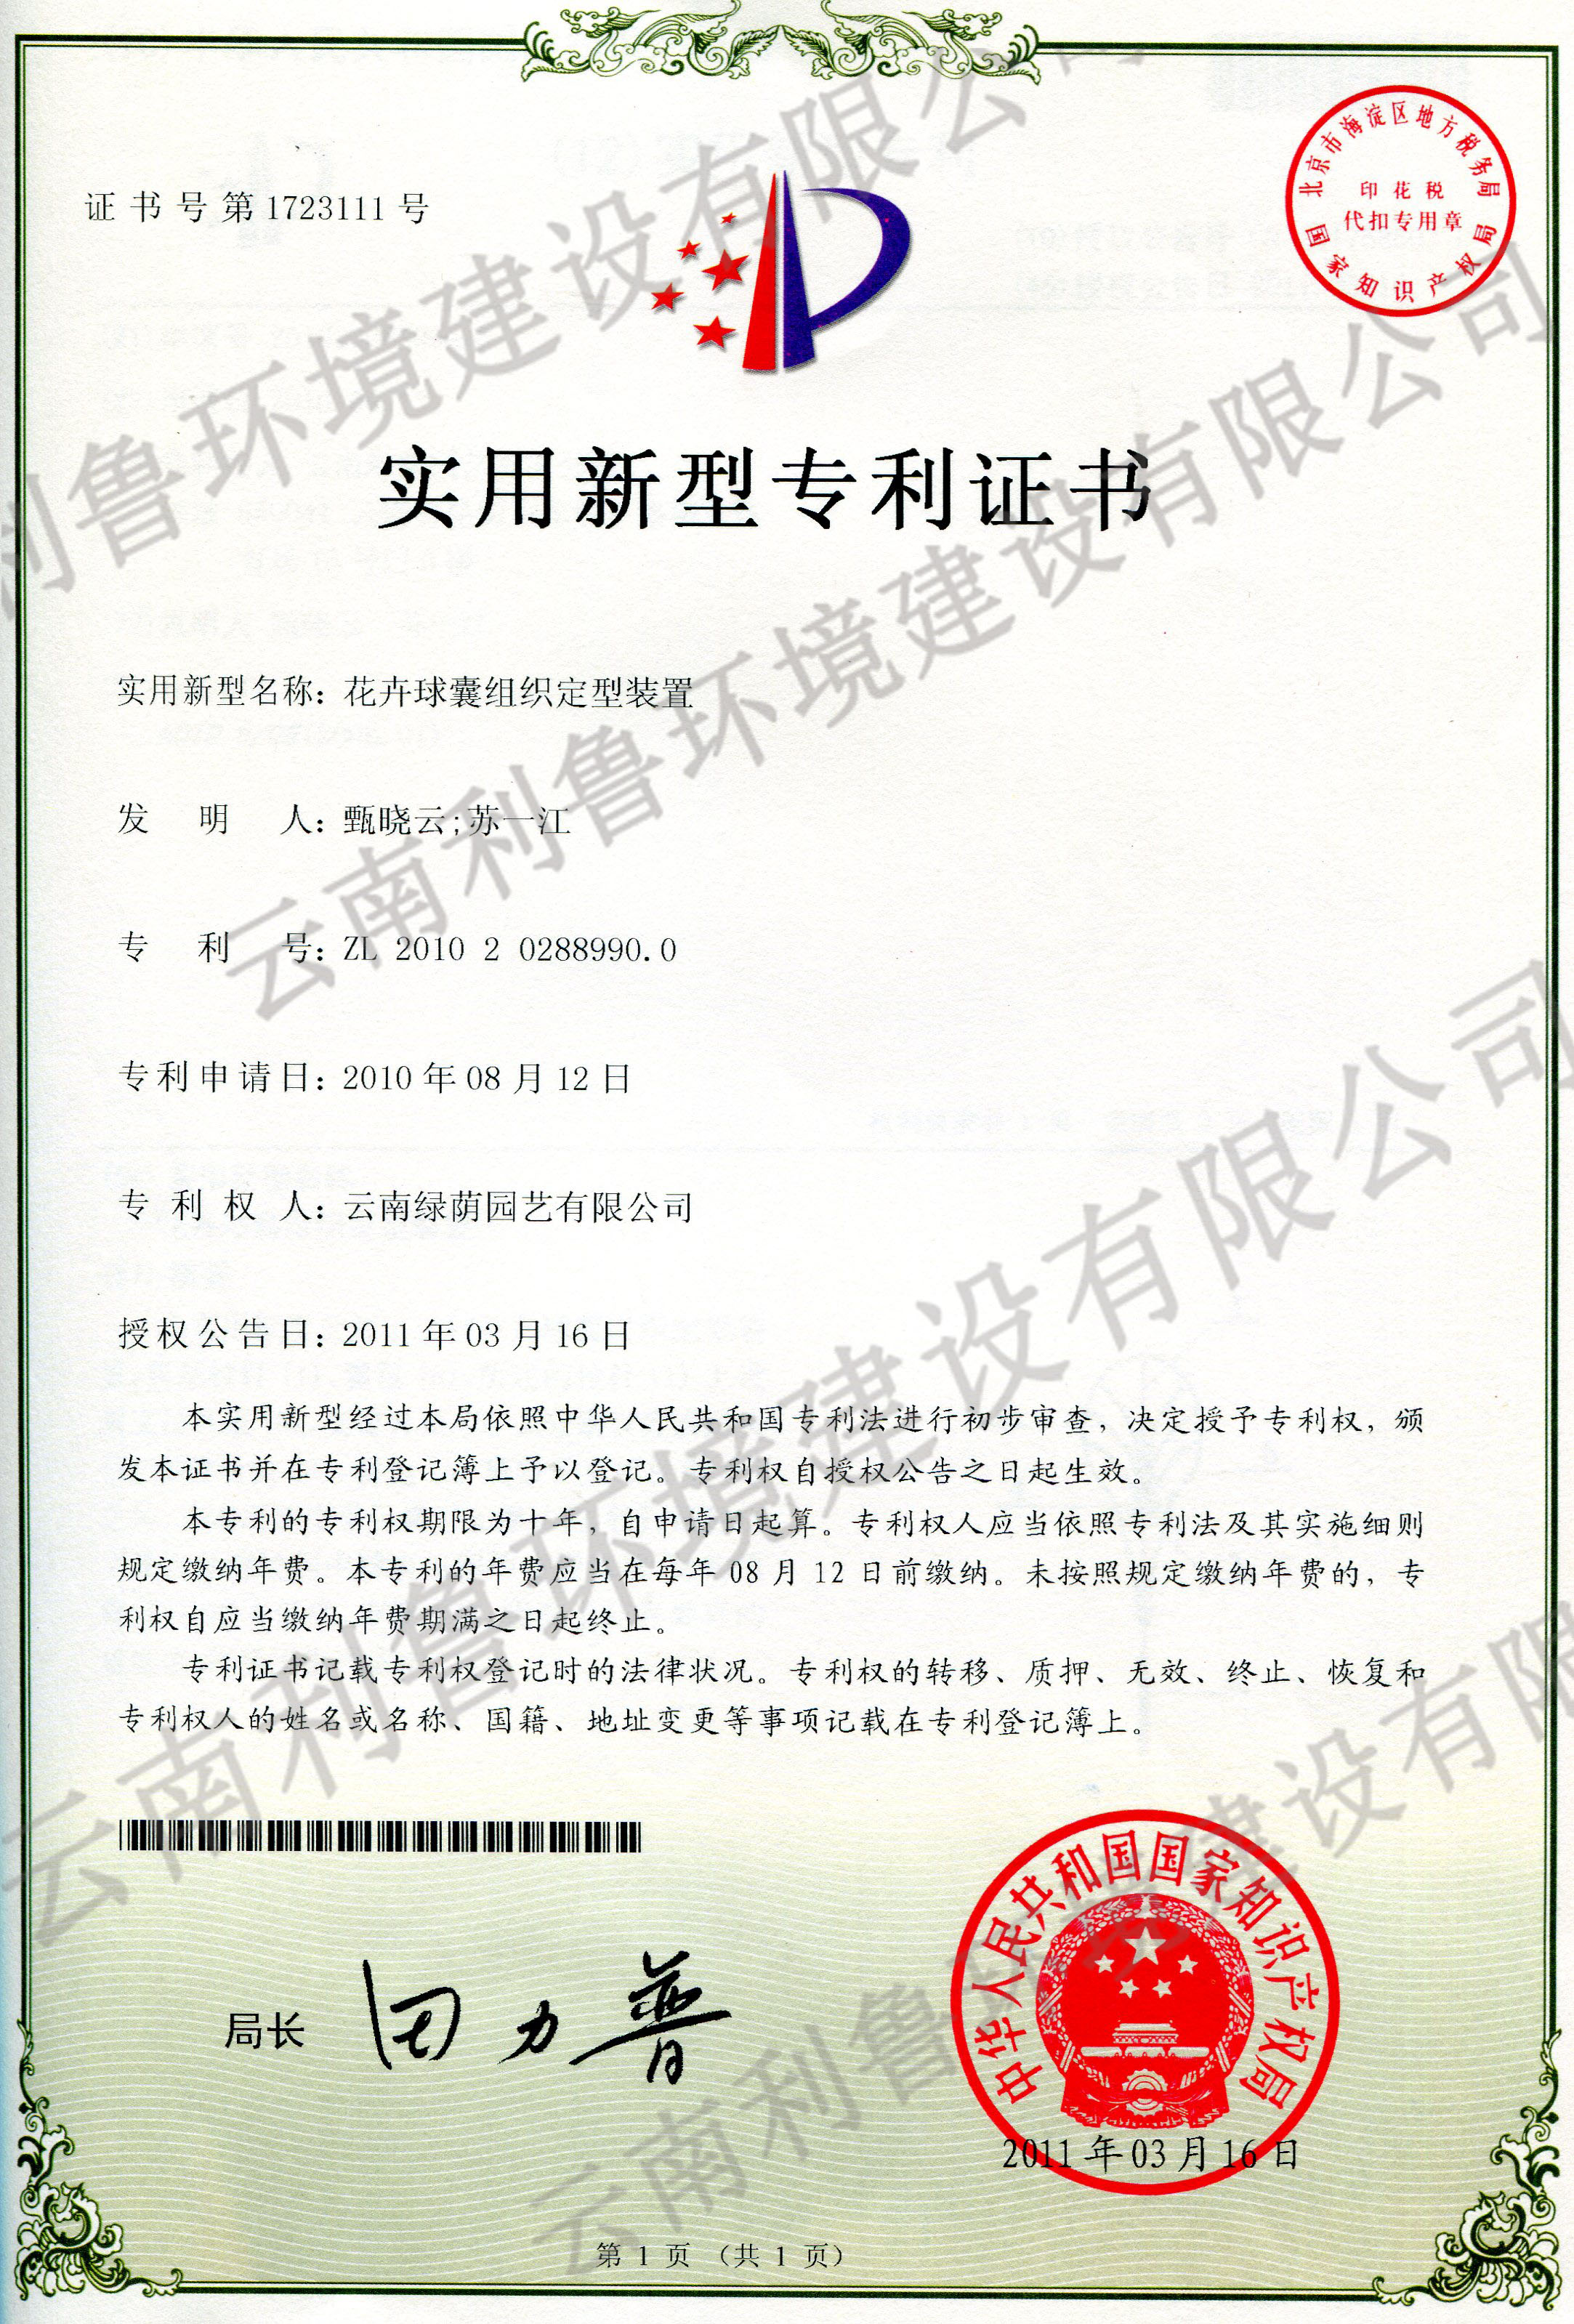 实用新型专利证书-花卉球囊组织定型装置 ZL 2010202889900